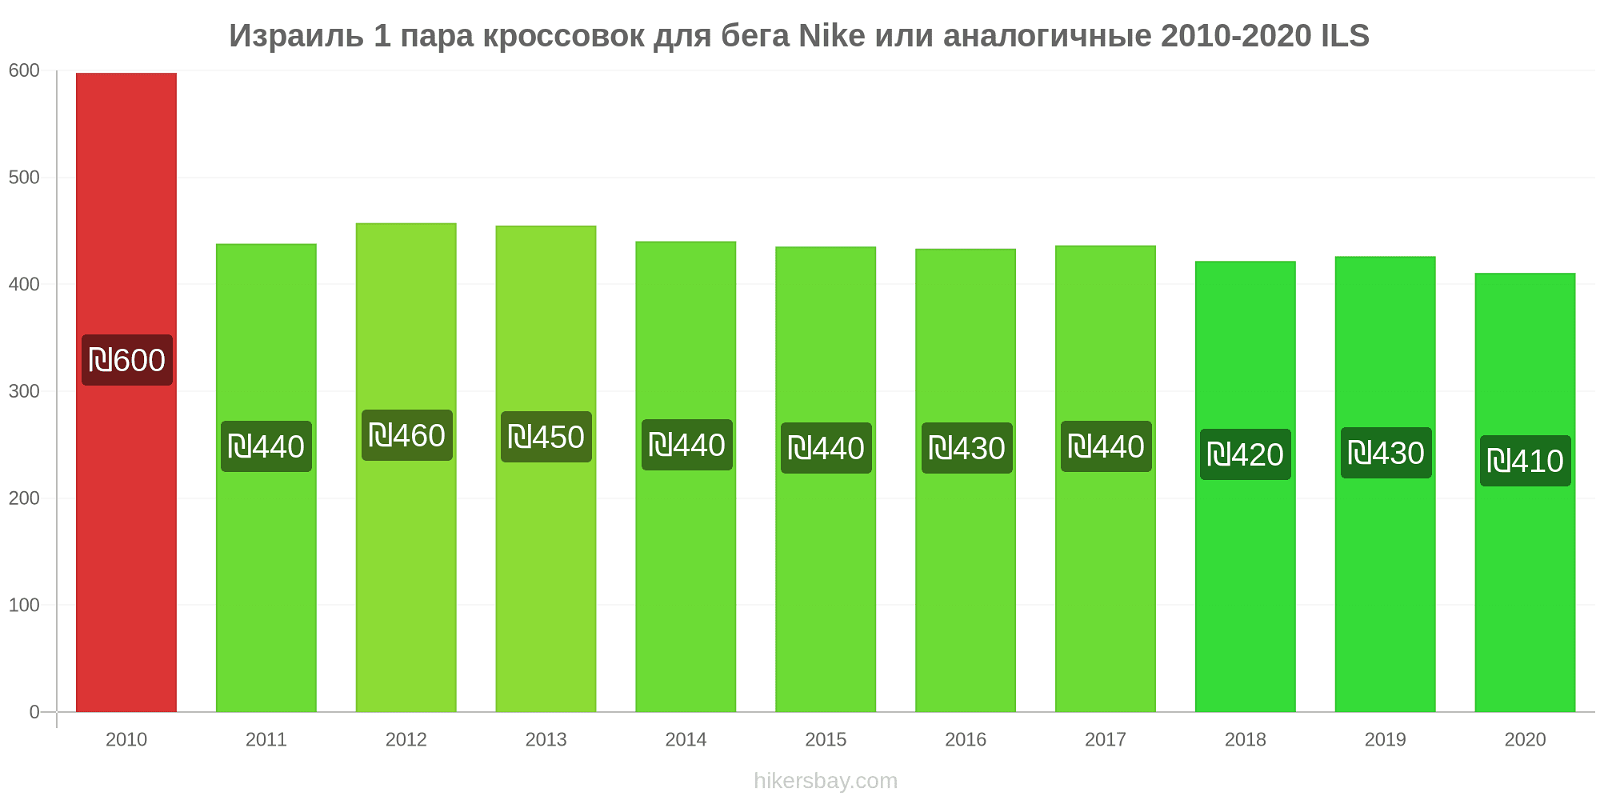 Израиль изменения цен 1 пара кроссовок для бега Nike или аналогичные hikersbay.com